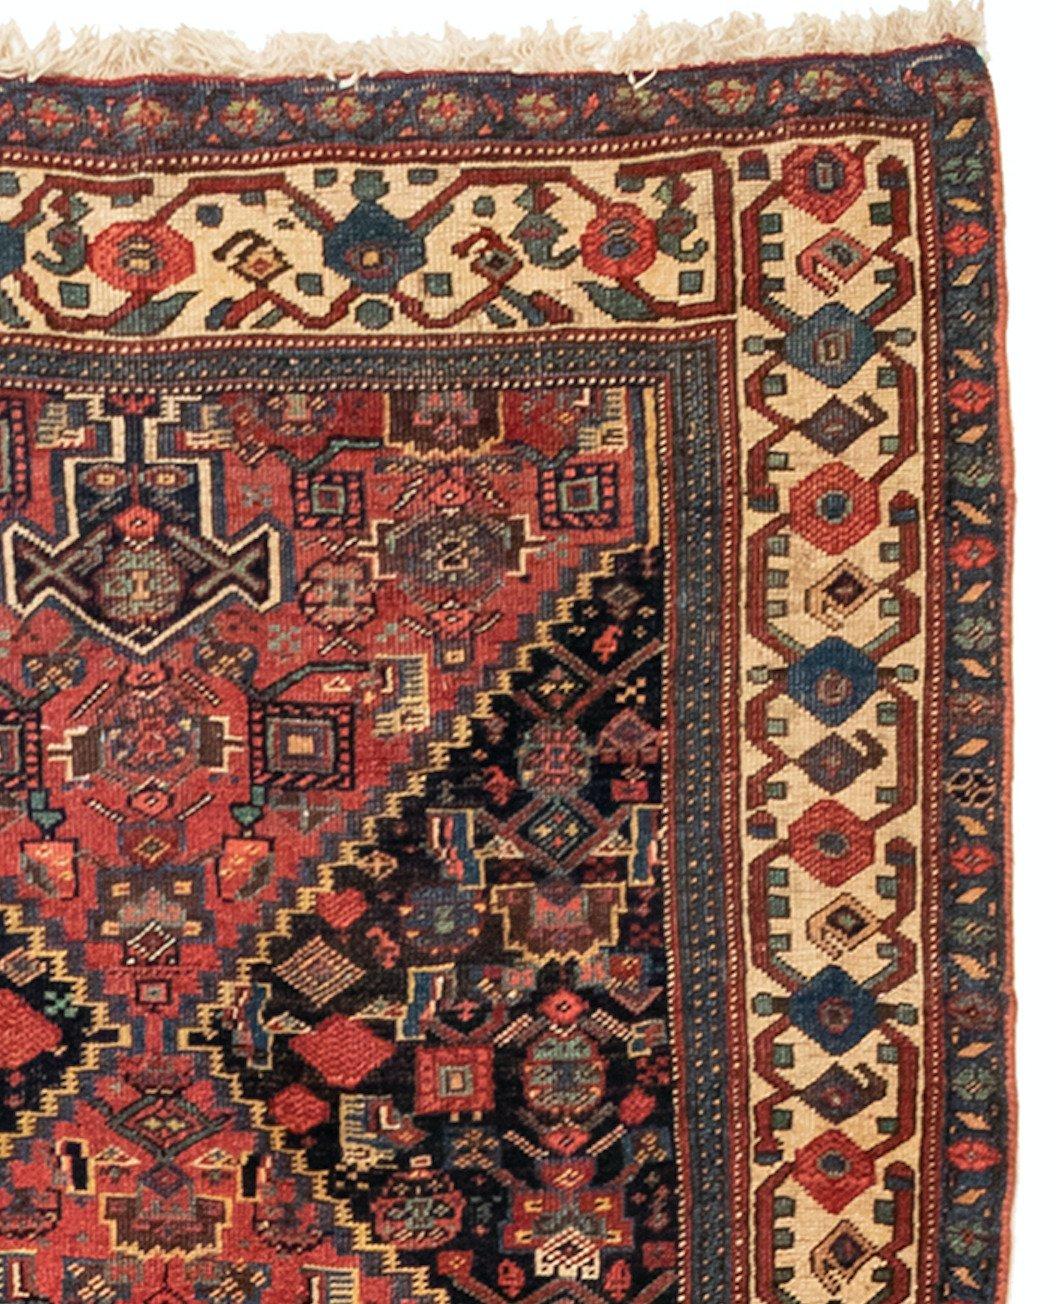 Dies ist eine schöne antike Marineblau und Elfenbein persischen Bidjar Teppich Hand im Iran in den 1900er Jahren geknüpft und Maßnahmen: 4.6 x 14,7 ft.

Bidjar-Teppiche werden hauptsächlich in der Stadt Bidjar und den umliegenden Dörfern gewebt.